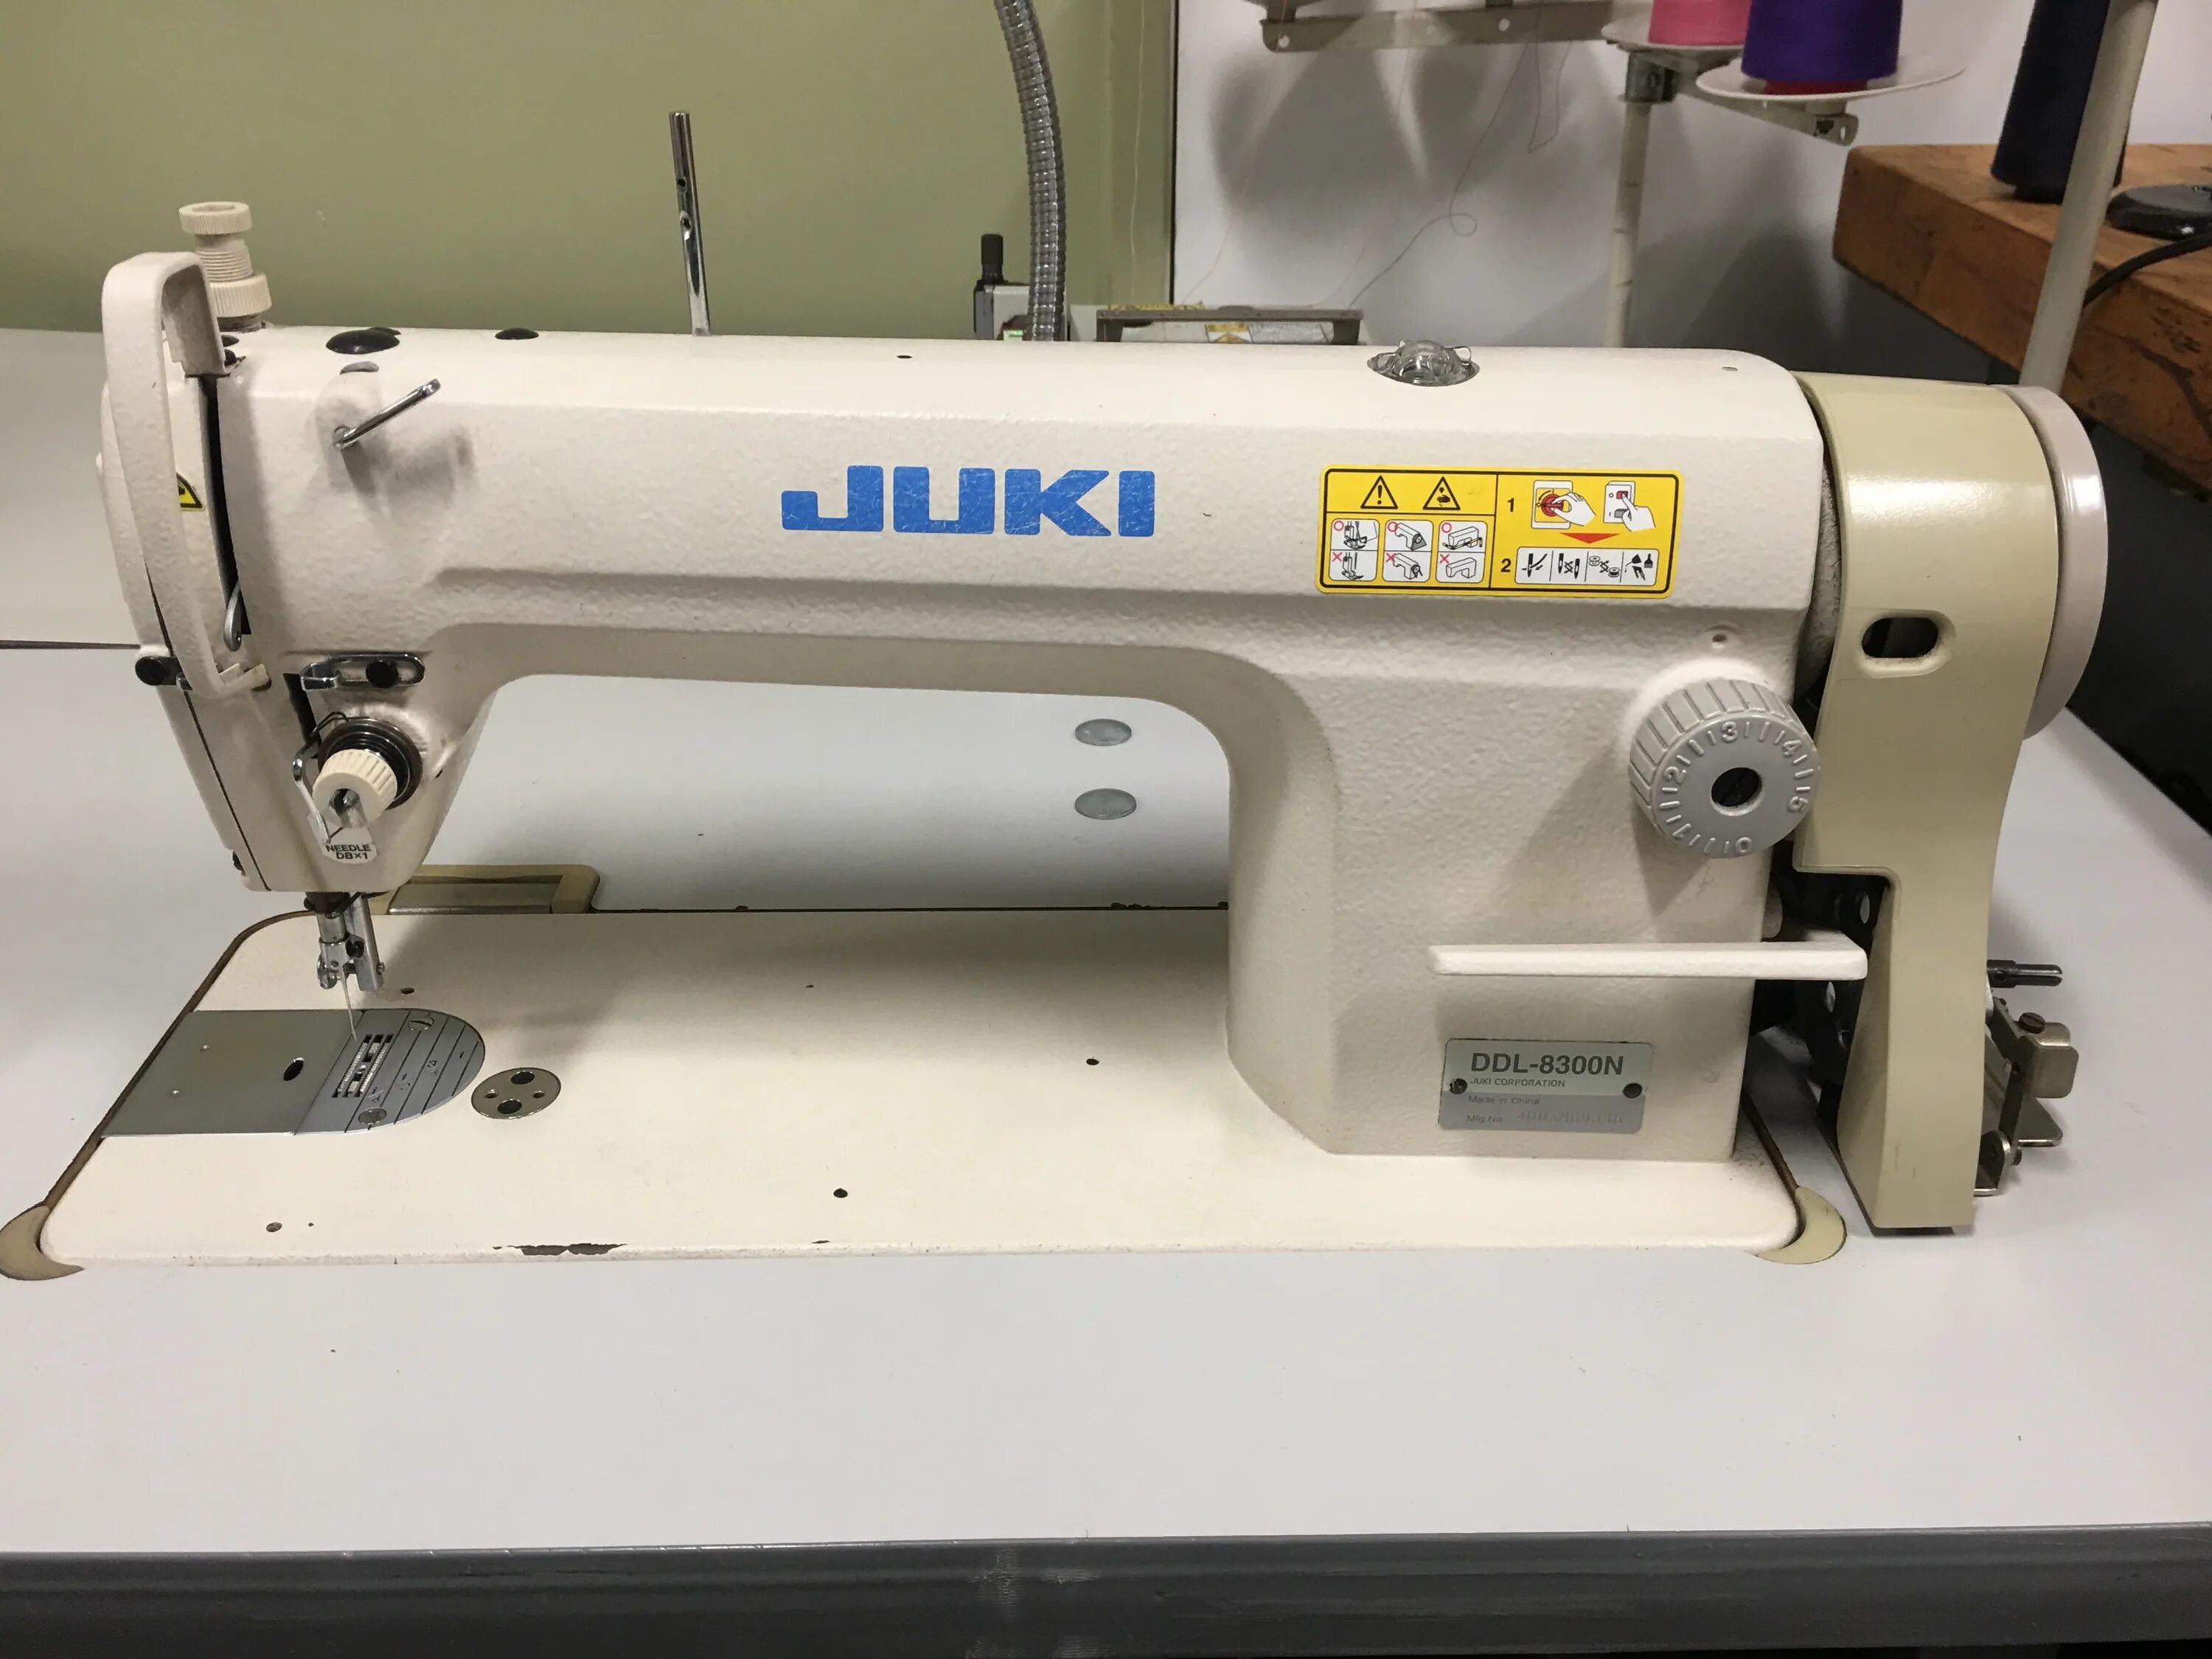 Машинка Juki DDL-8300n. Швейная машина Juki 8300. DDL-8300n. Juki MS-810 швейная машина. Промышленная швейная машинка juki